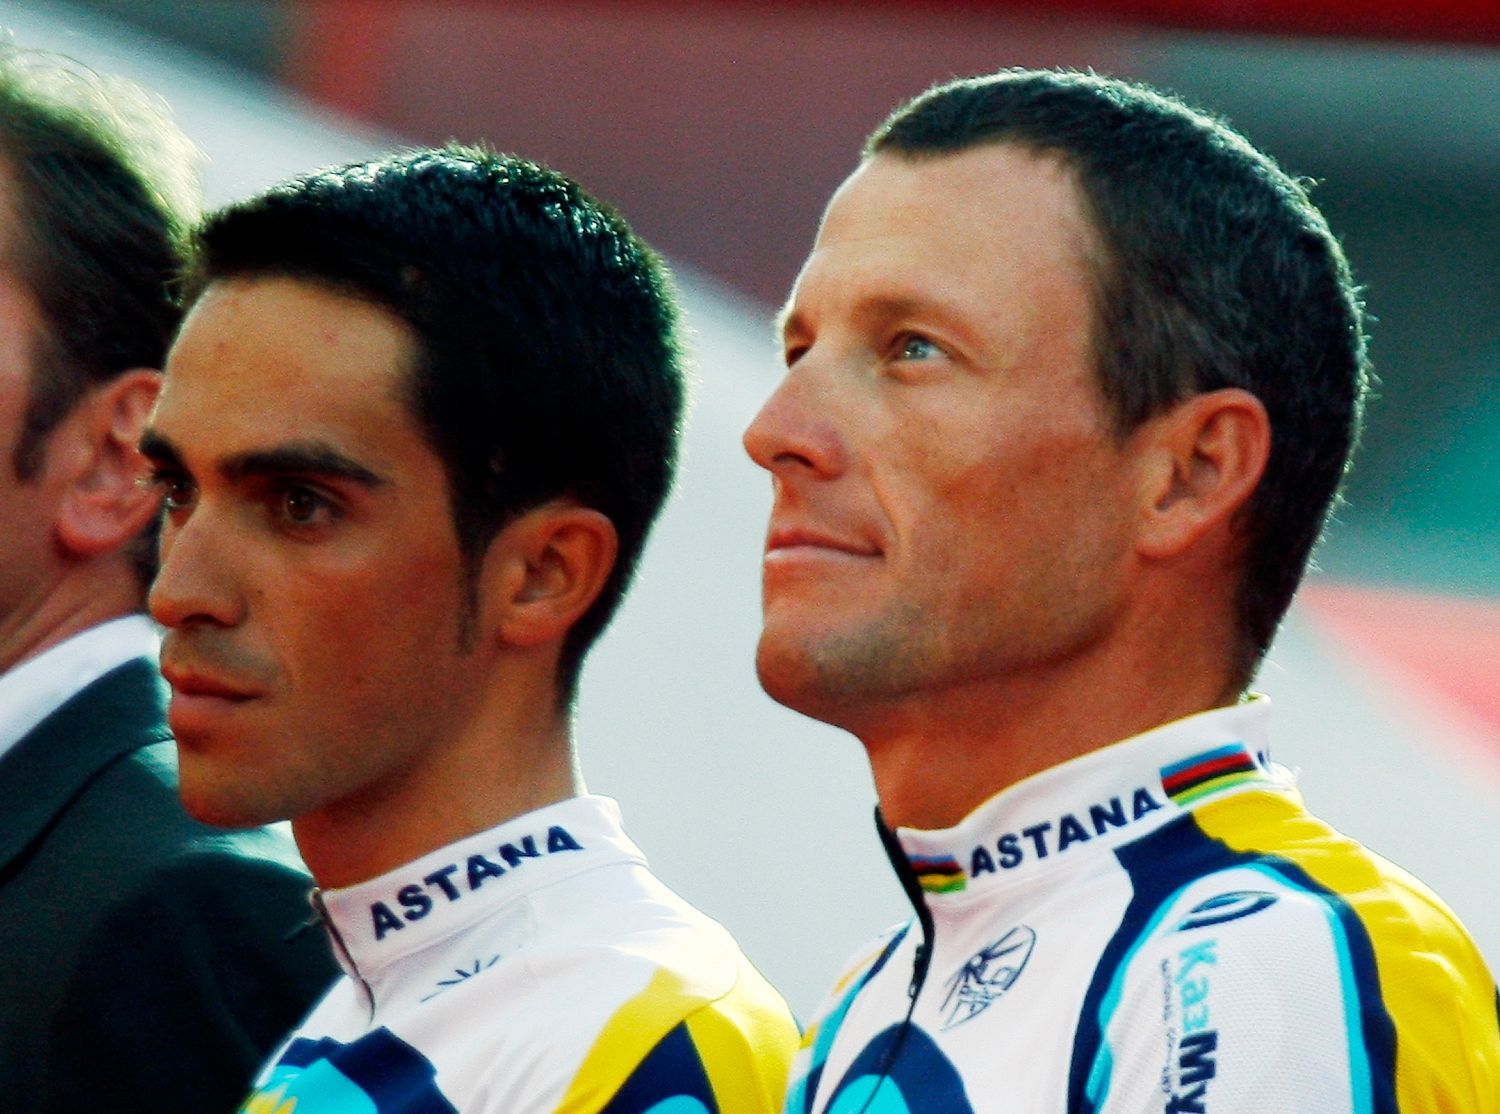 Americký cyklista Lance Armstrong ze stáje Astana stojí na pódiu se svým kolegou Španělem Albertem Contadorem během týmové prezentace před začátkem Tour de France 2009.